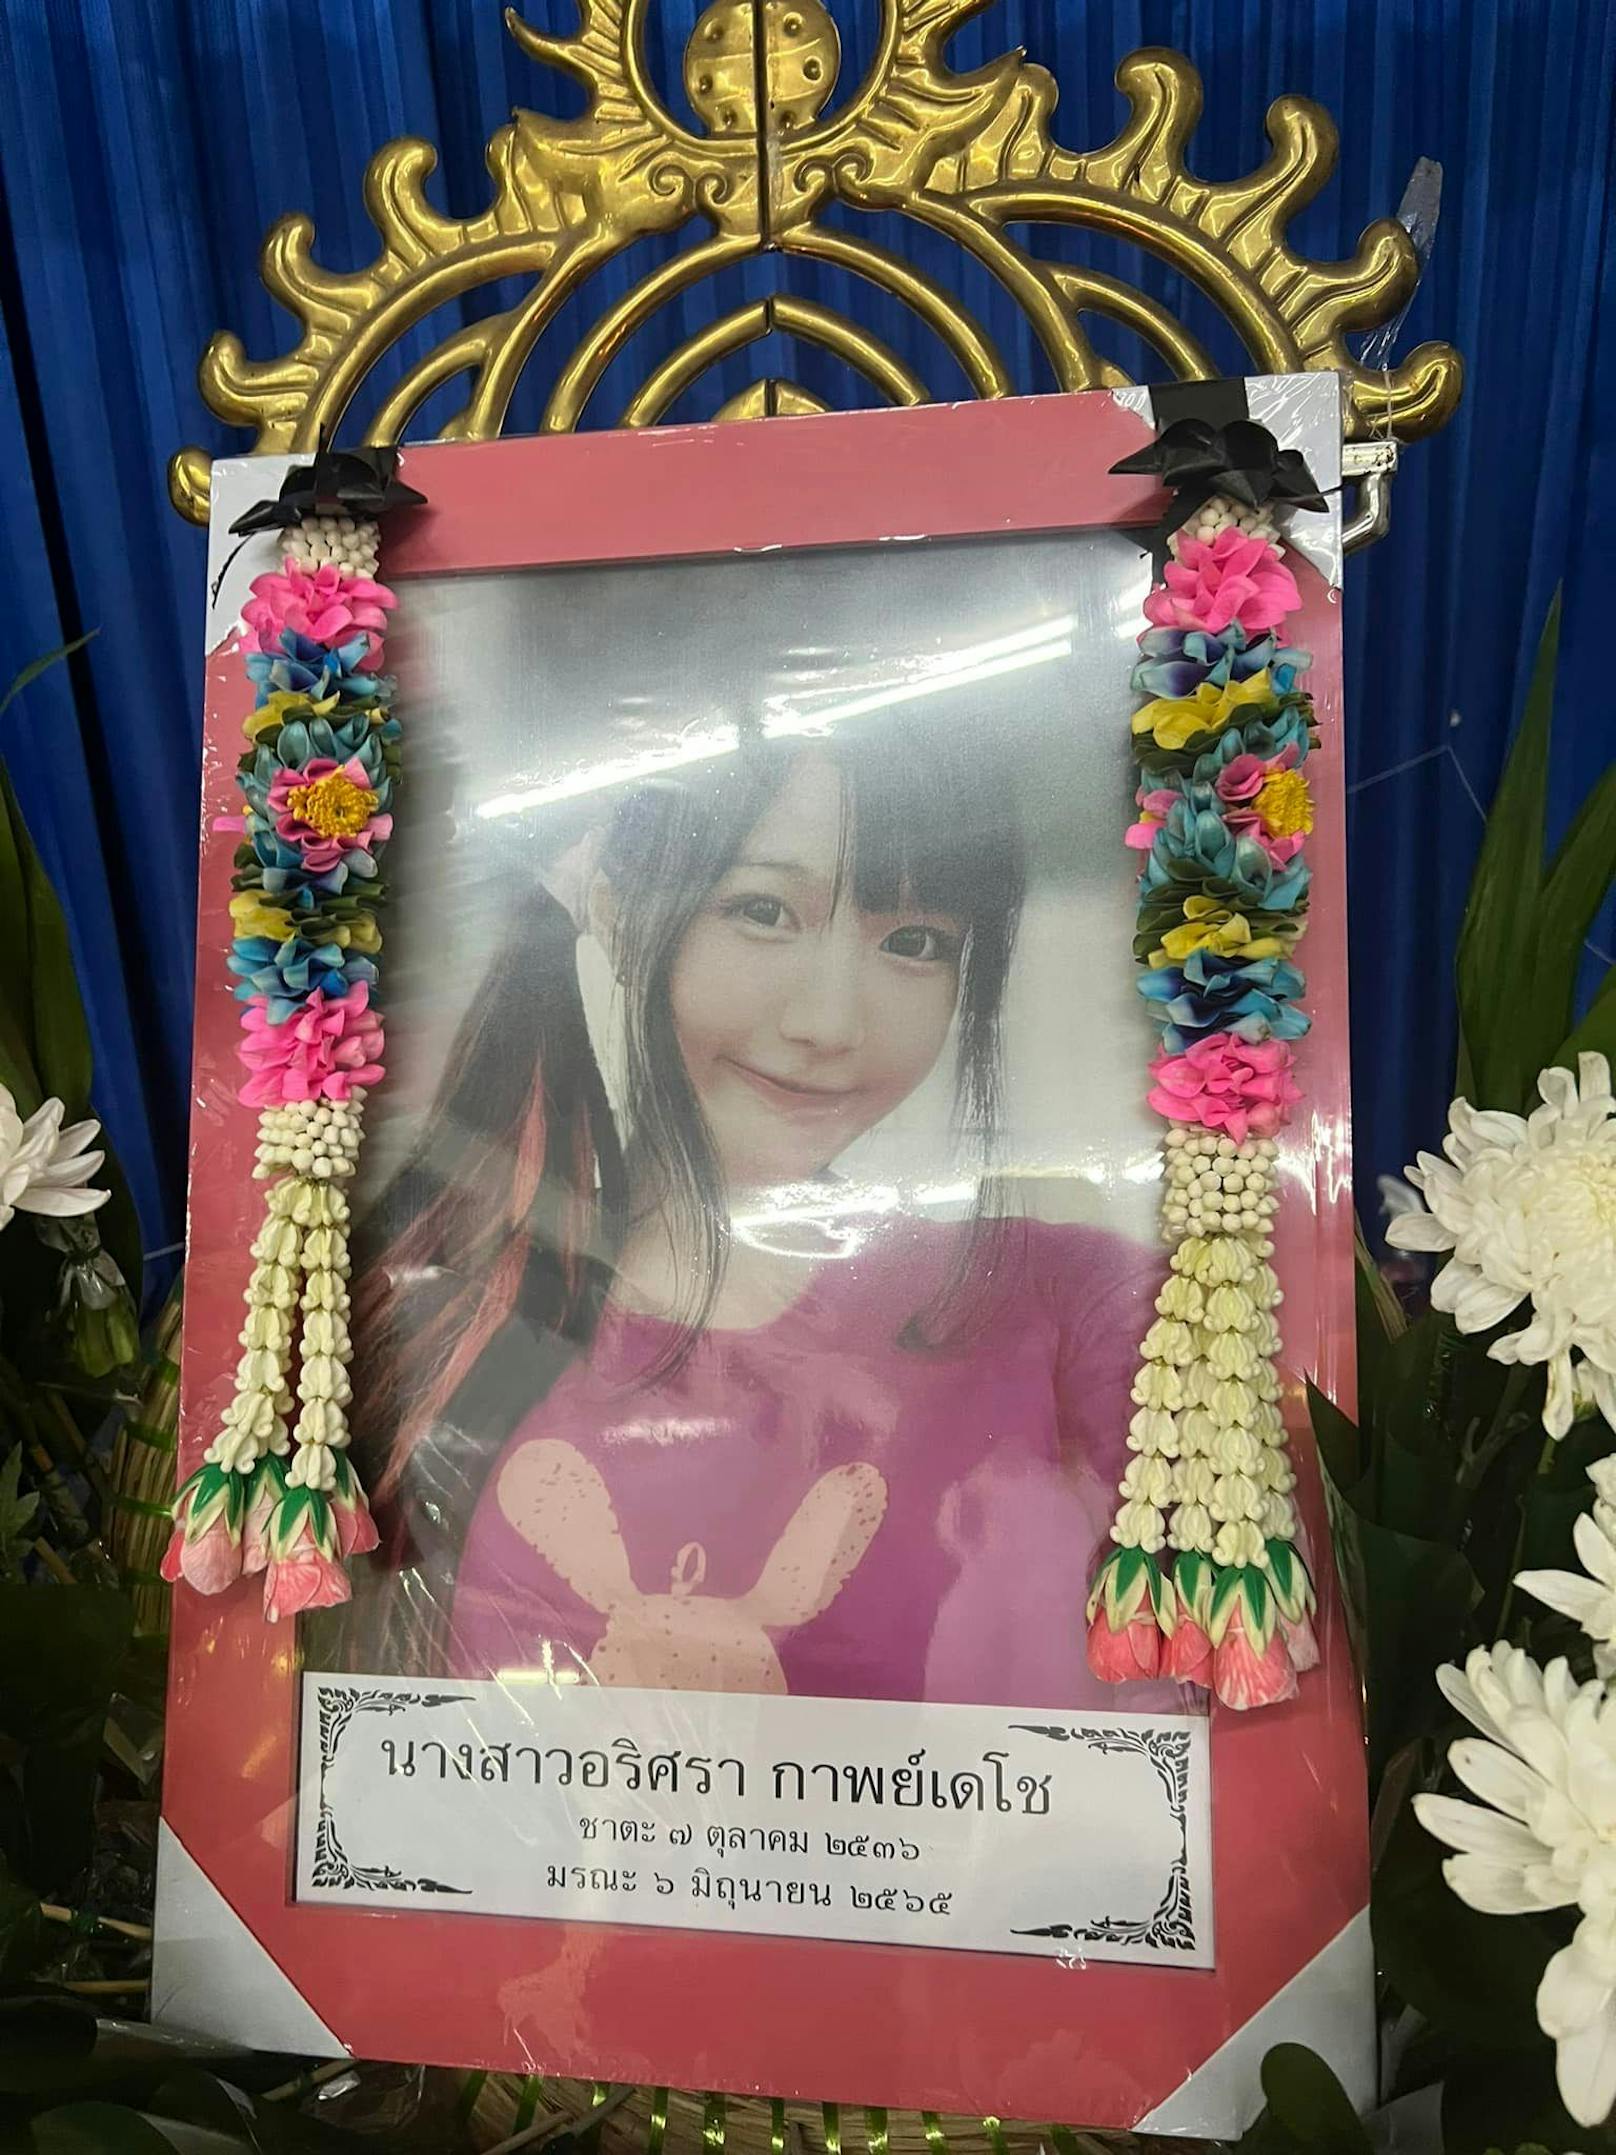 Arisara Karbdecho wurde nur 27 Jahre alt. Die thailändische Influencerin starb nach drei Monaten im Koma nachdem sie beinahe an Kebab-Fleisch erstickt war.